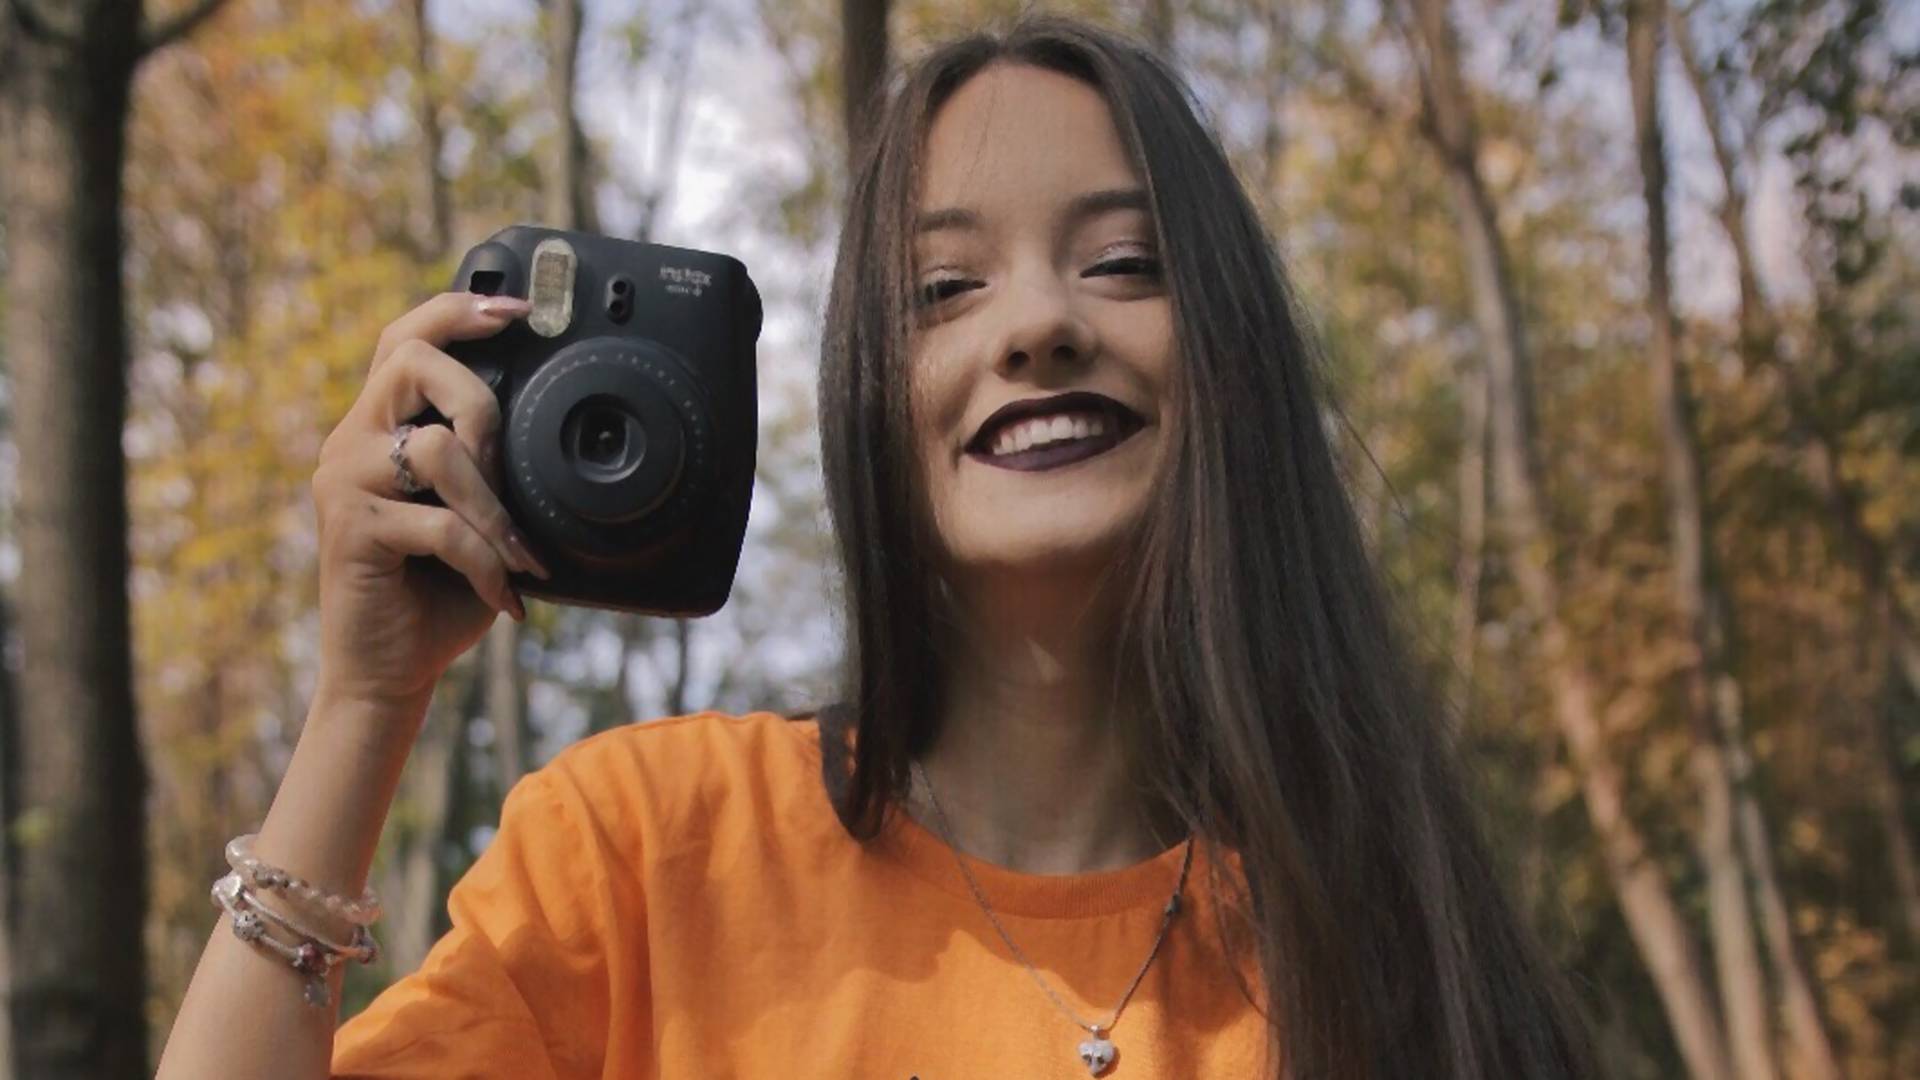 Jana Dačović sprema nagradu za devojke sa najboljim gejming selfijima